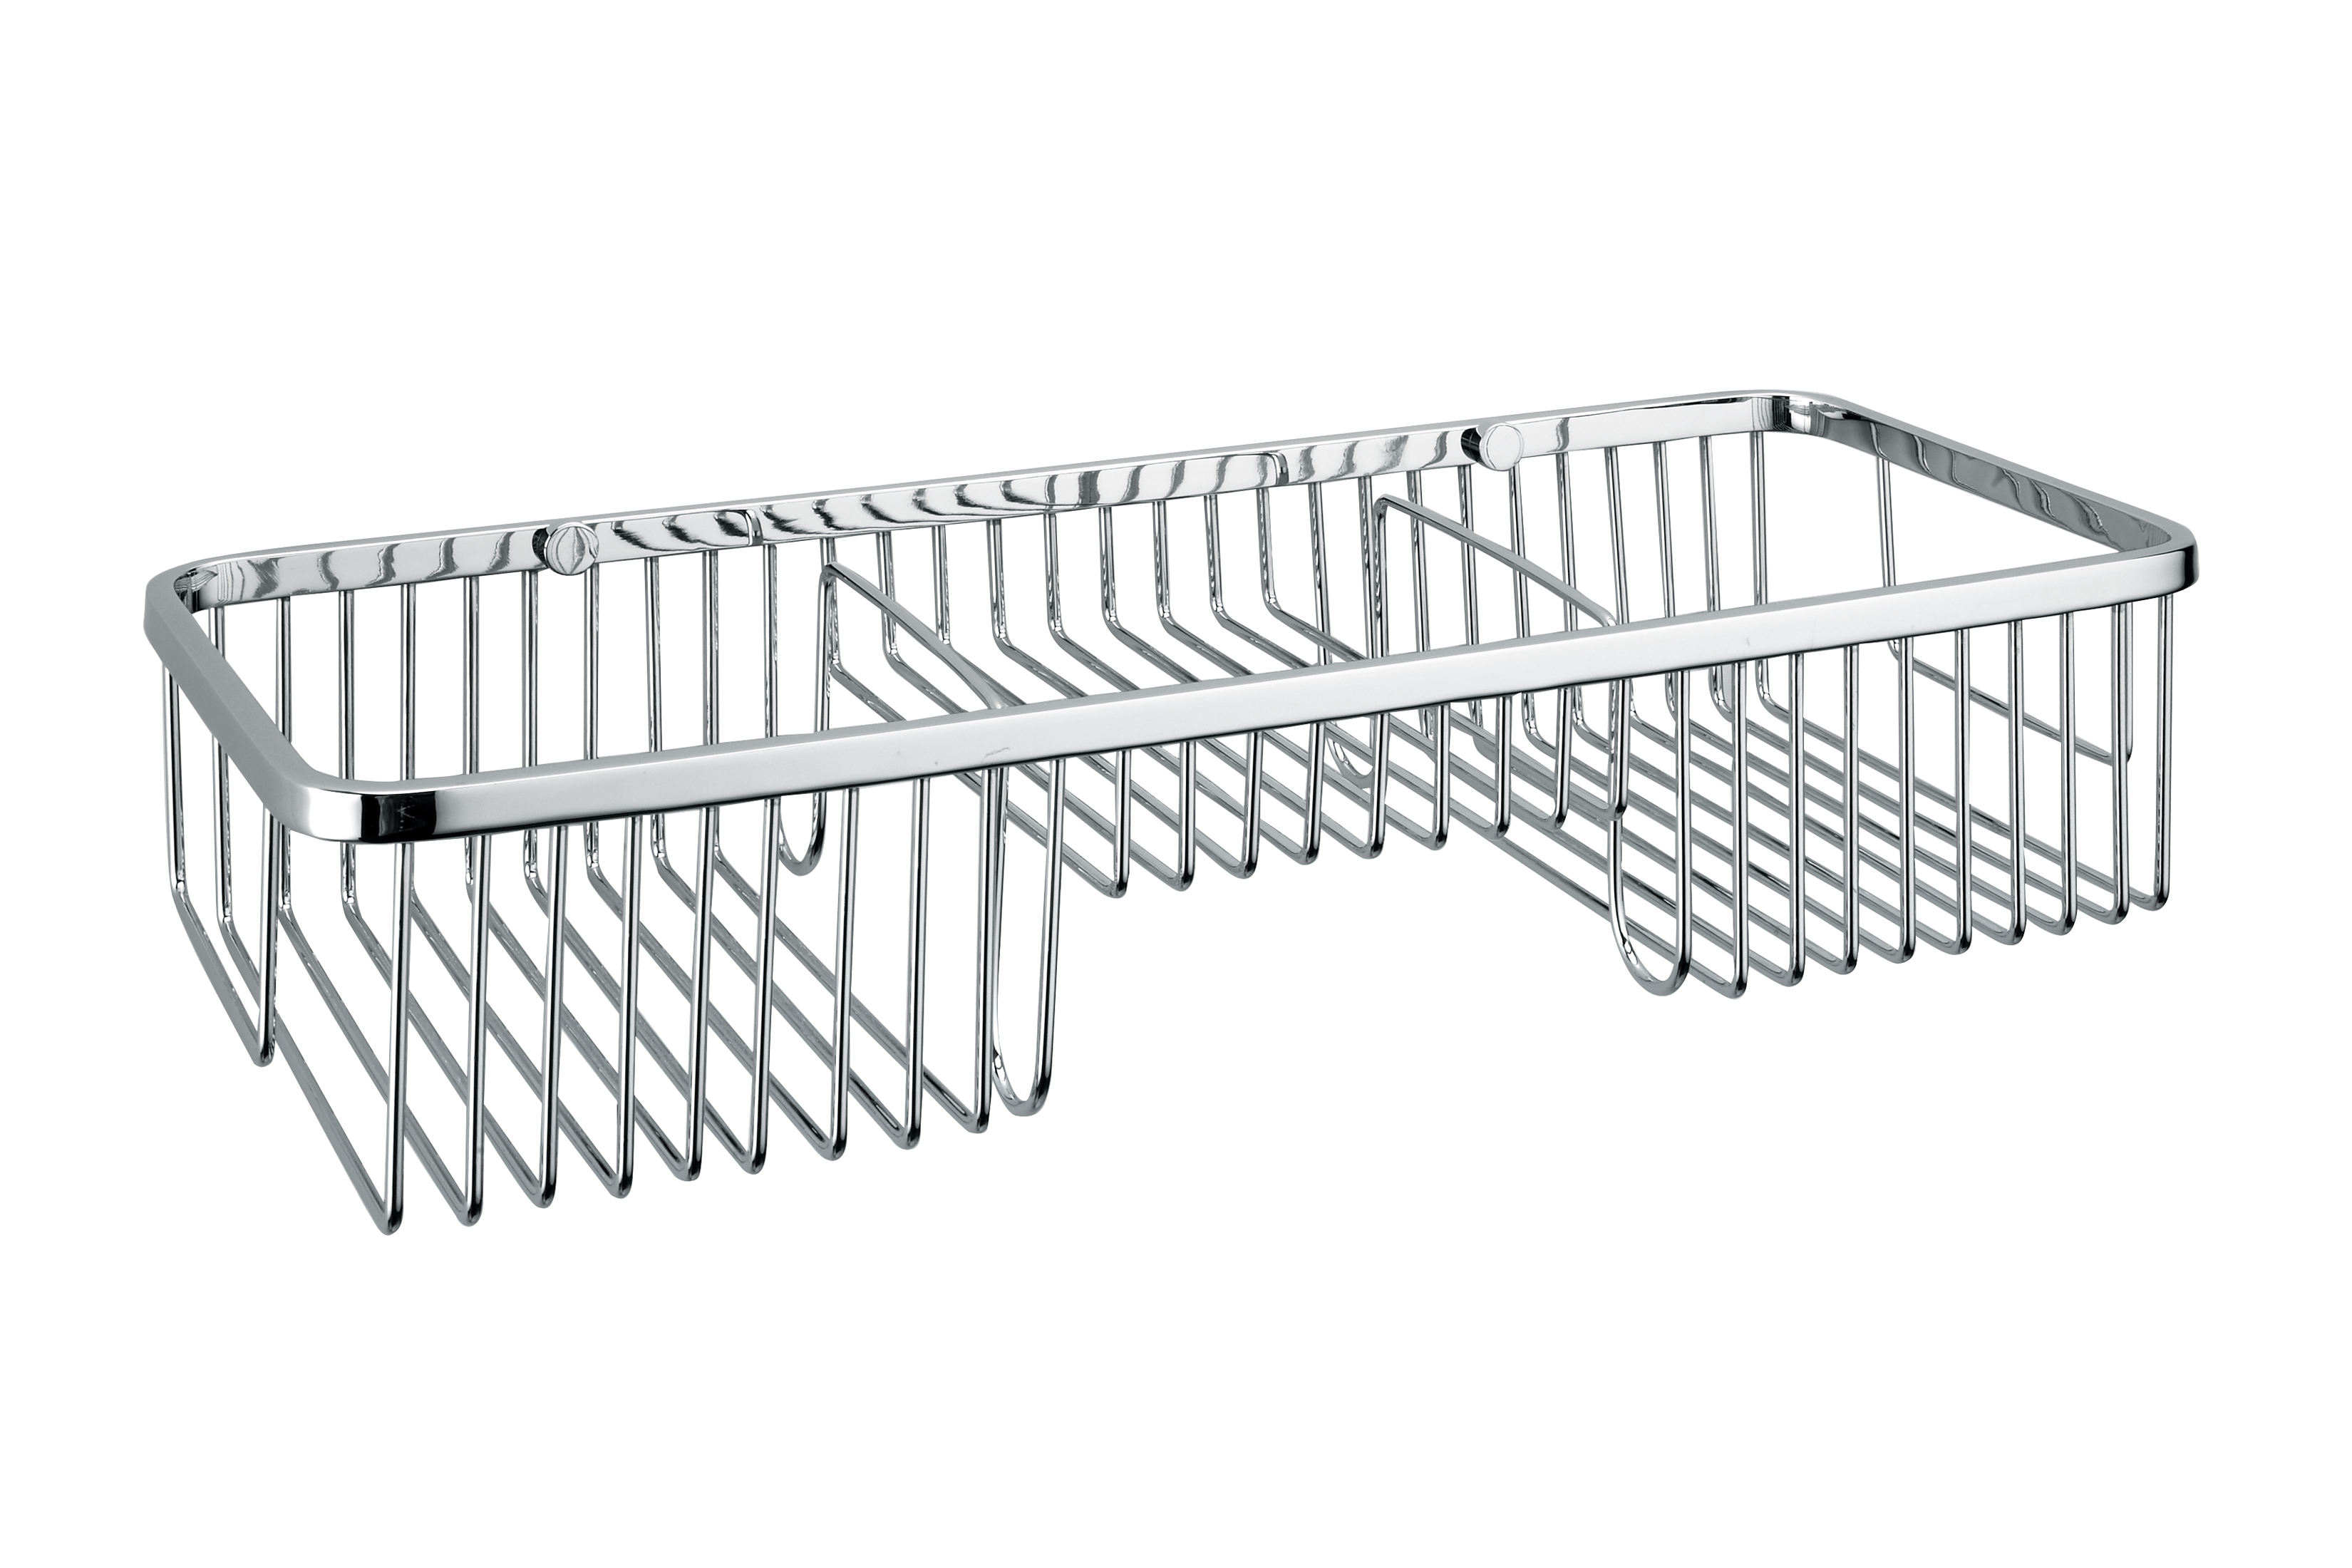 Stainless steel shower rack YS25 | bathroom accessories